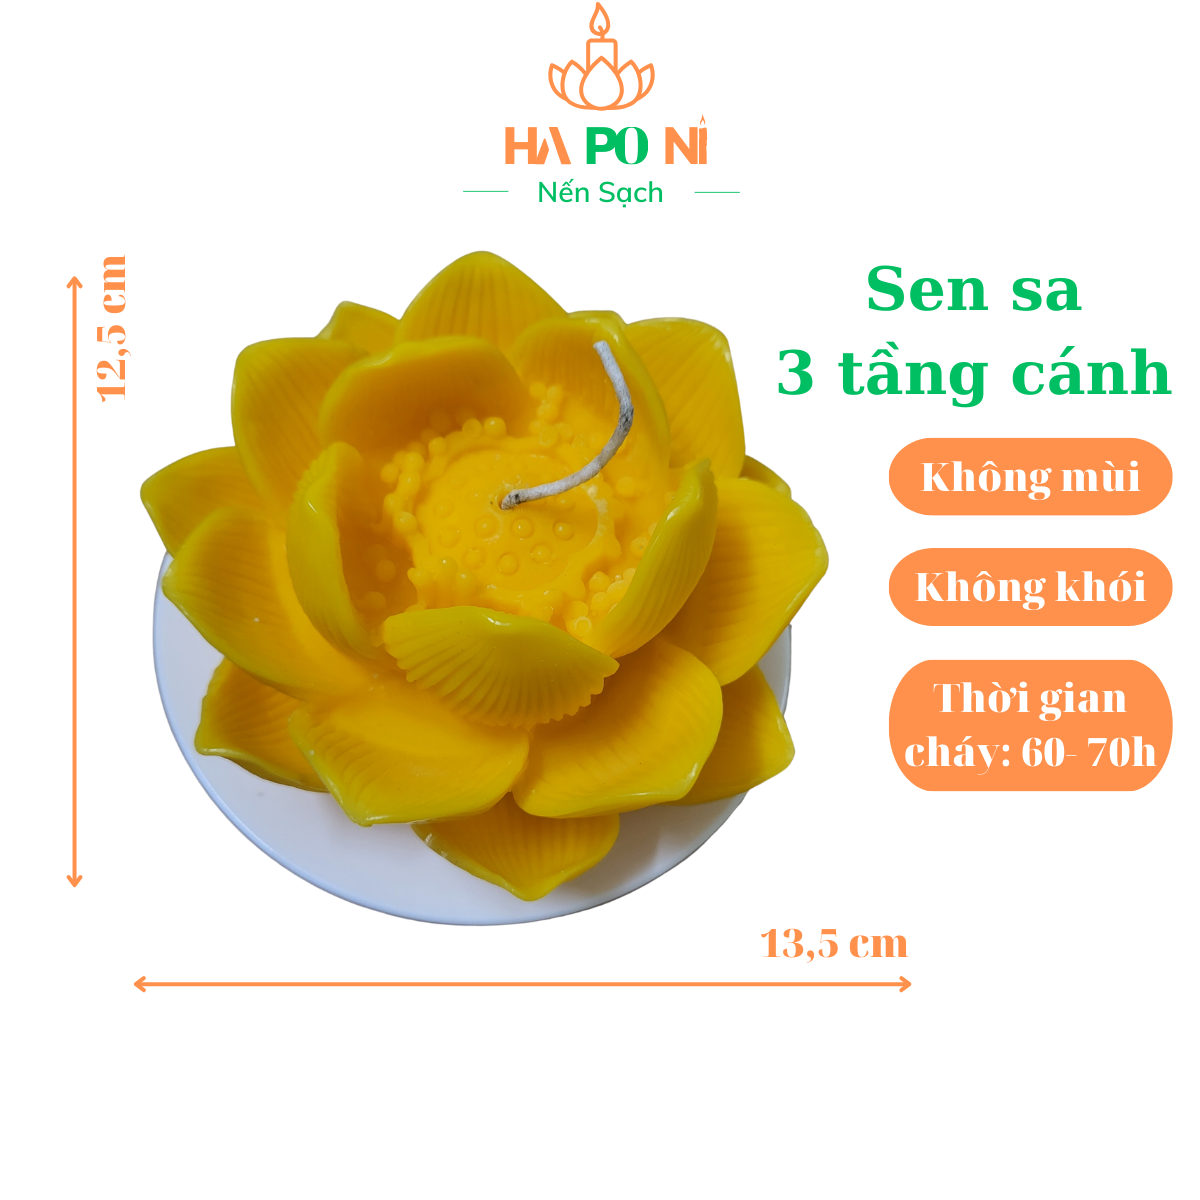 Nến hoa sen sa HAPONI 3 tầng cánh màu vàng, nến sen cúng Phật không khói, thời gian cháy 60 giờ